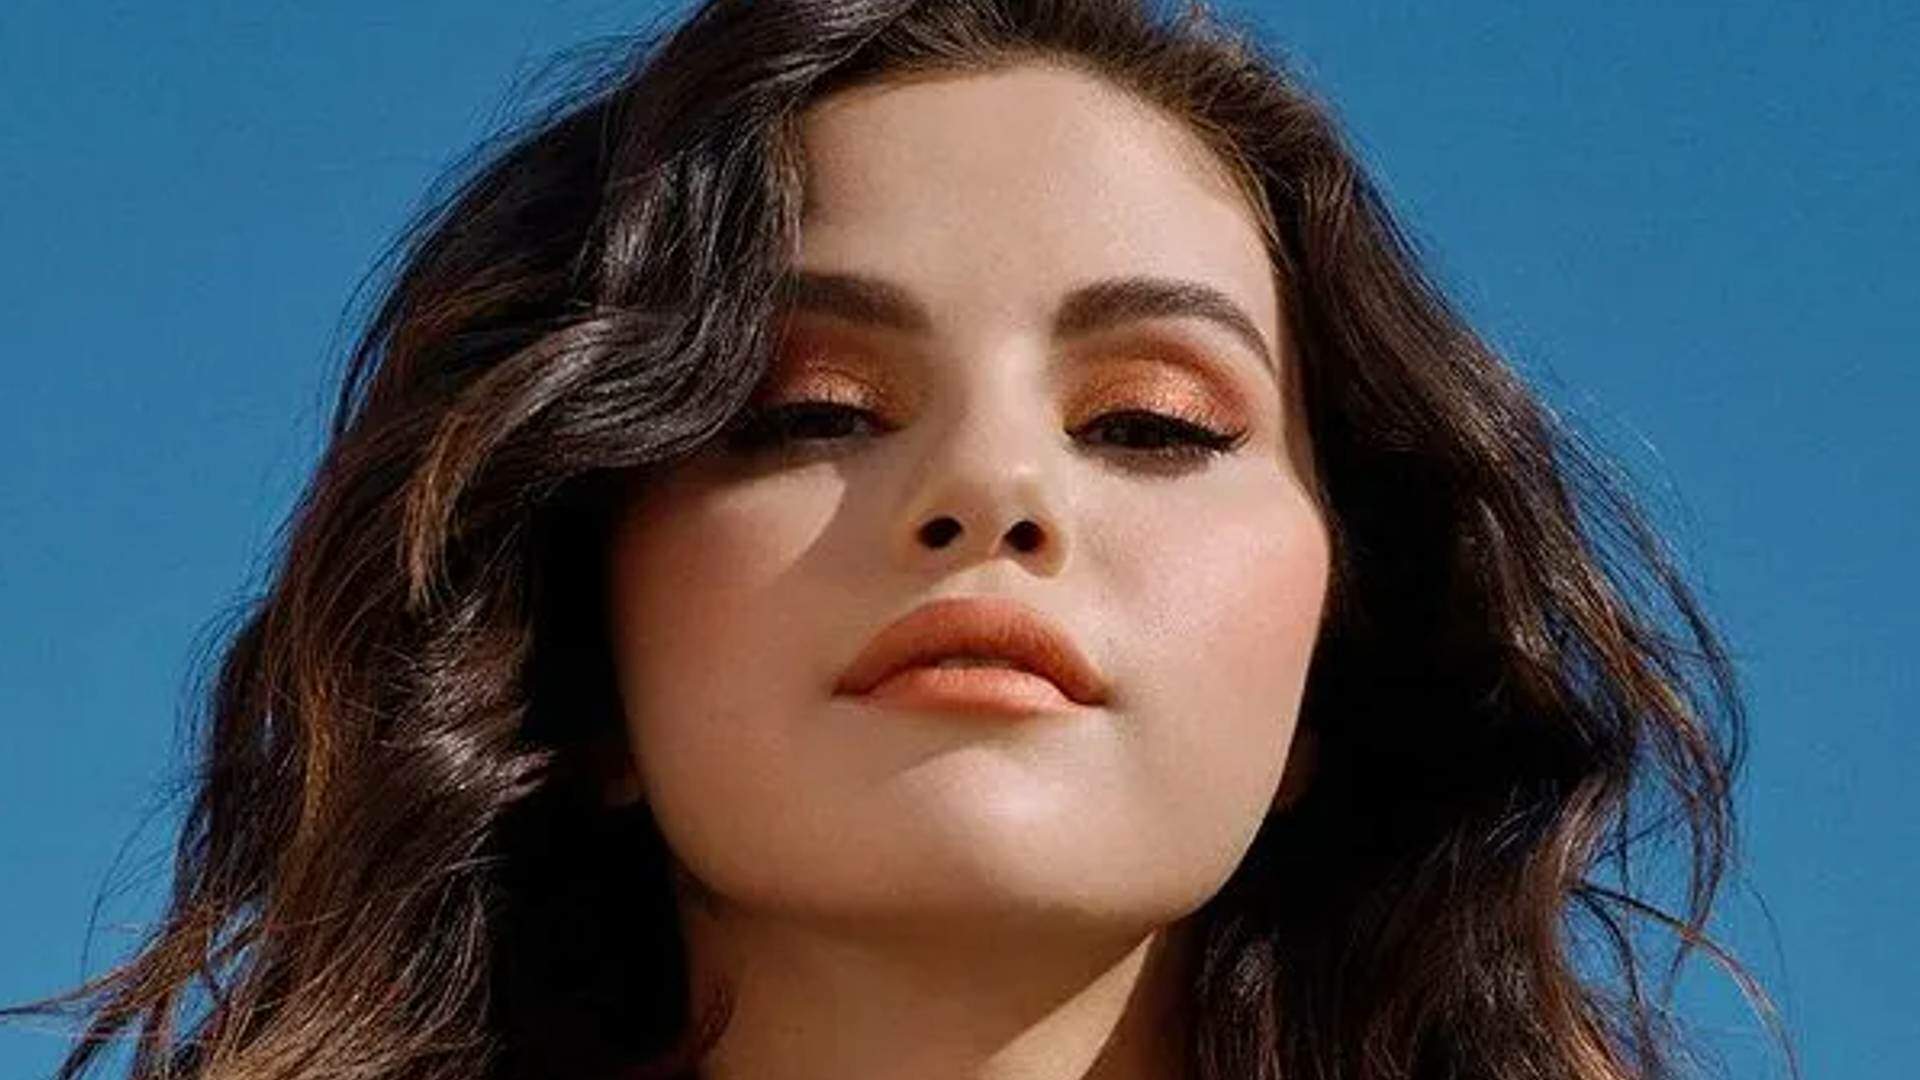 Novo casal? Selena Gomez está vivendo romance com grande nome da música eletrônica